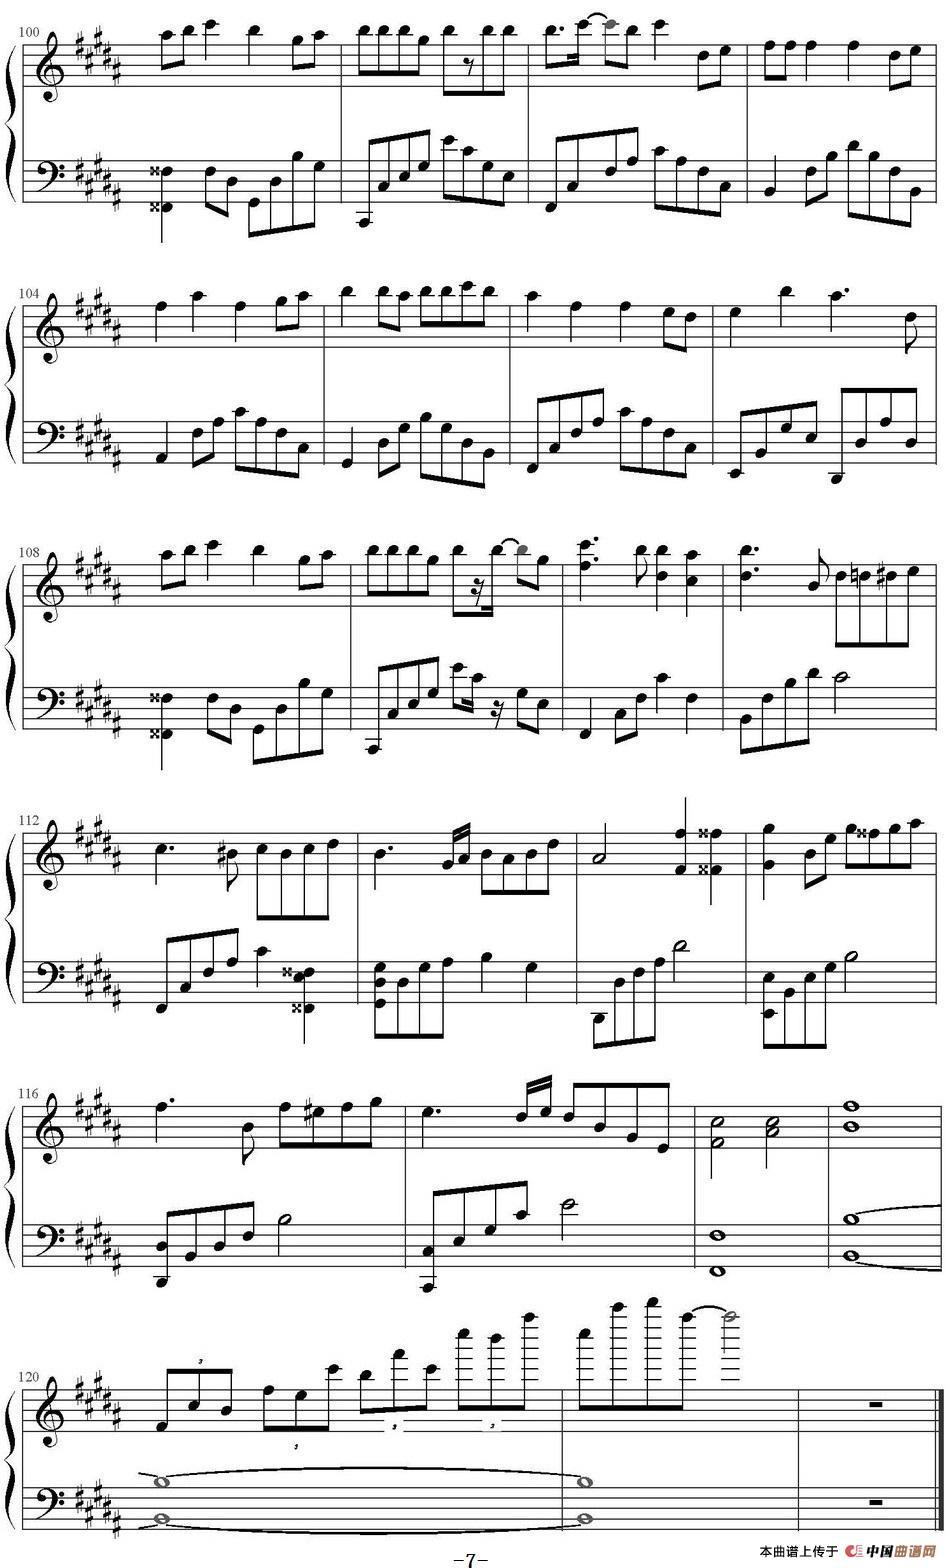 《放生》钢琴曲谱图分享